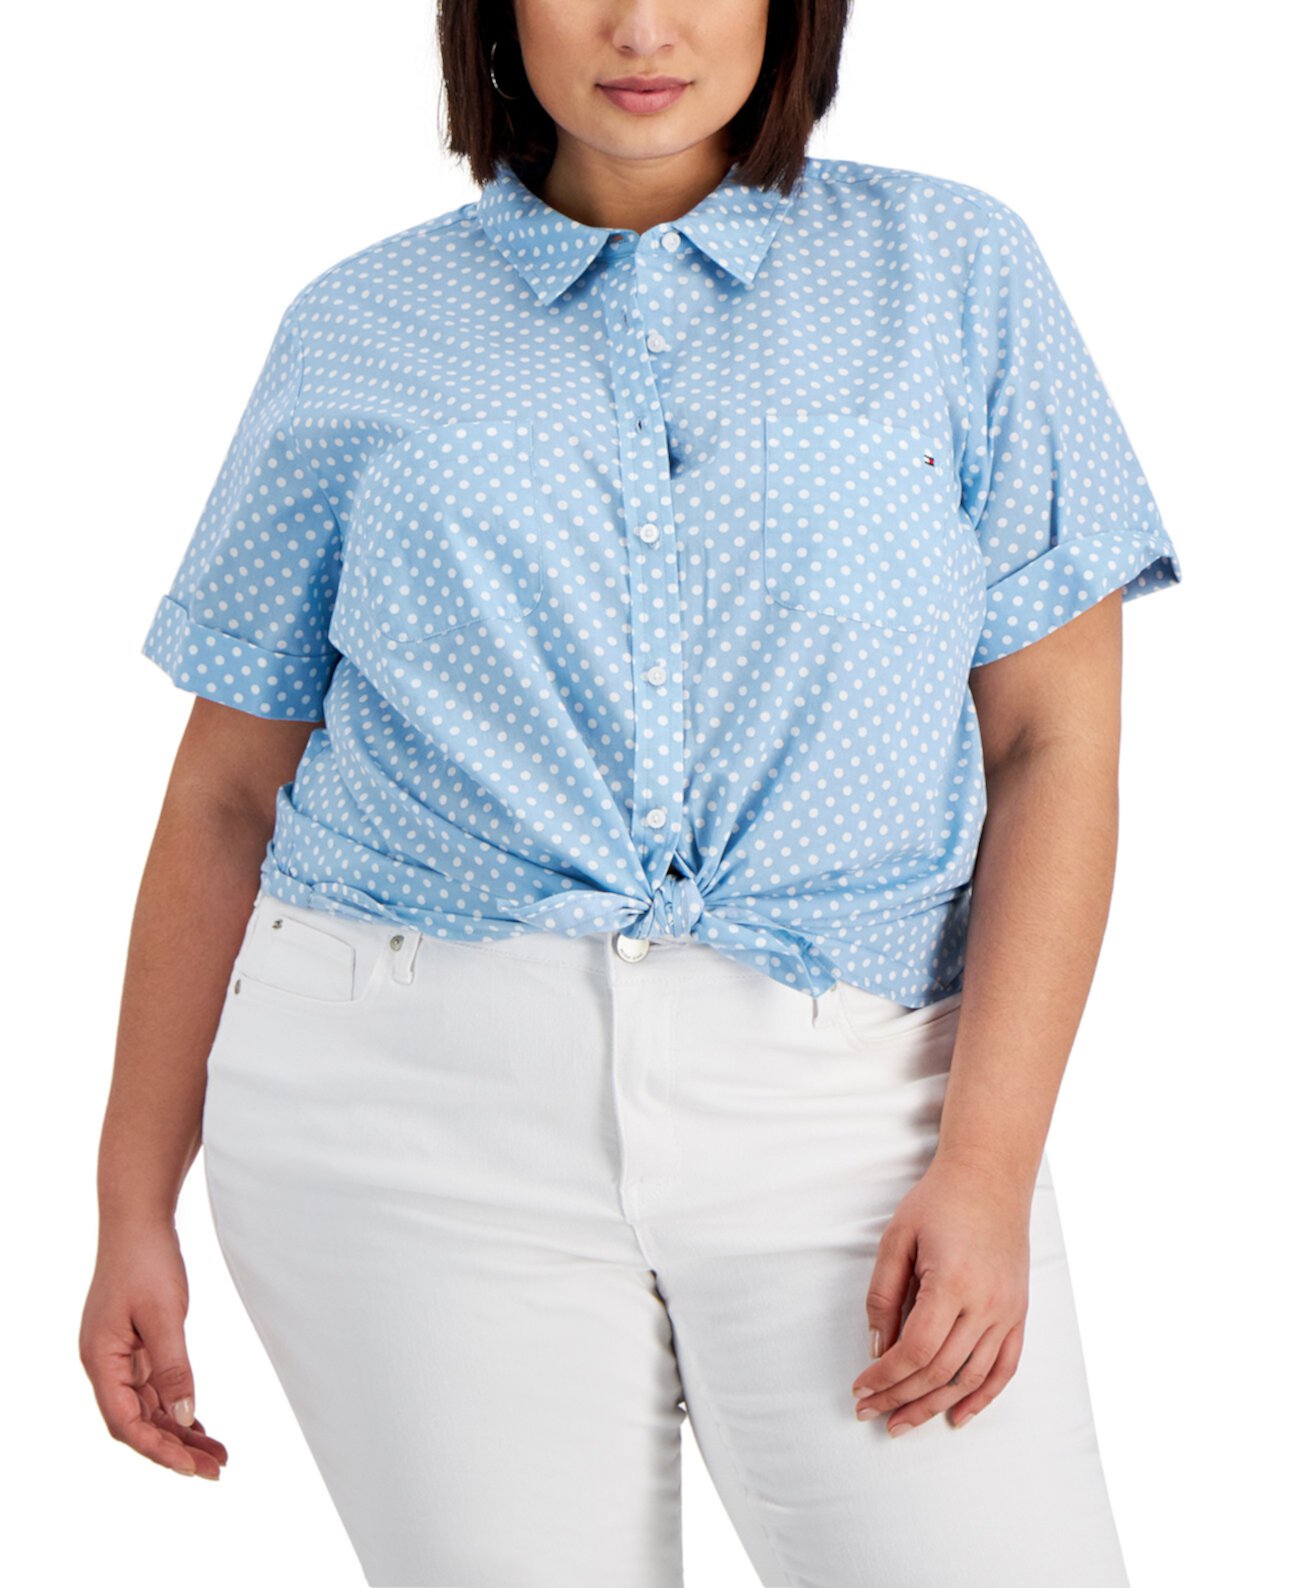 Женская блузка большого размера Tommy Hilfiger с принтом в горошек Tommy Hilfiger